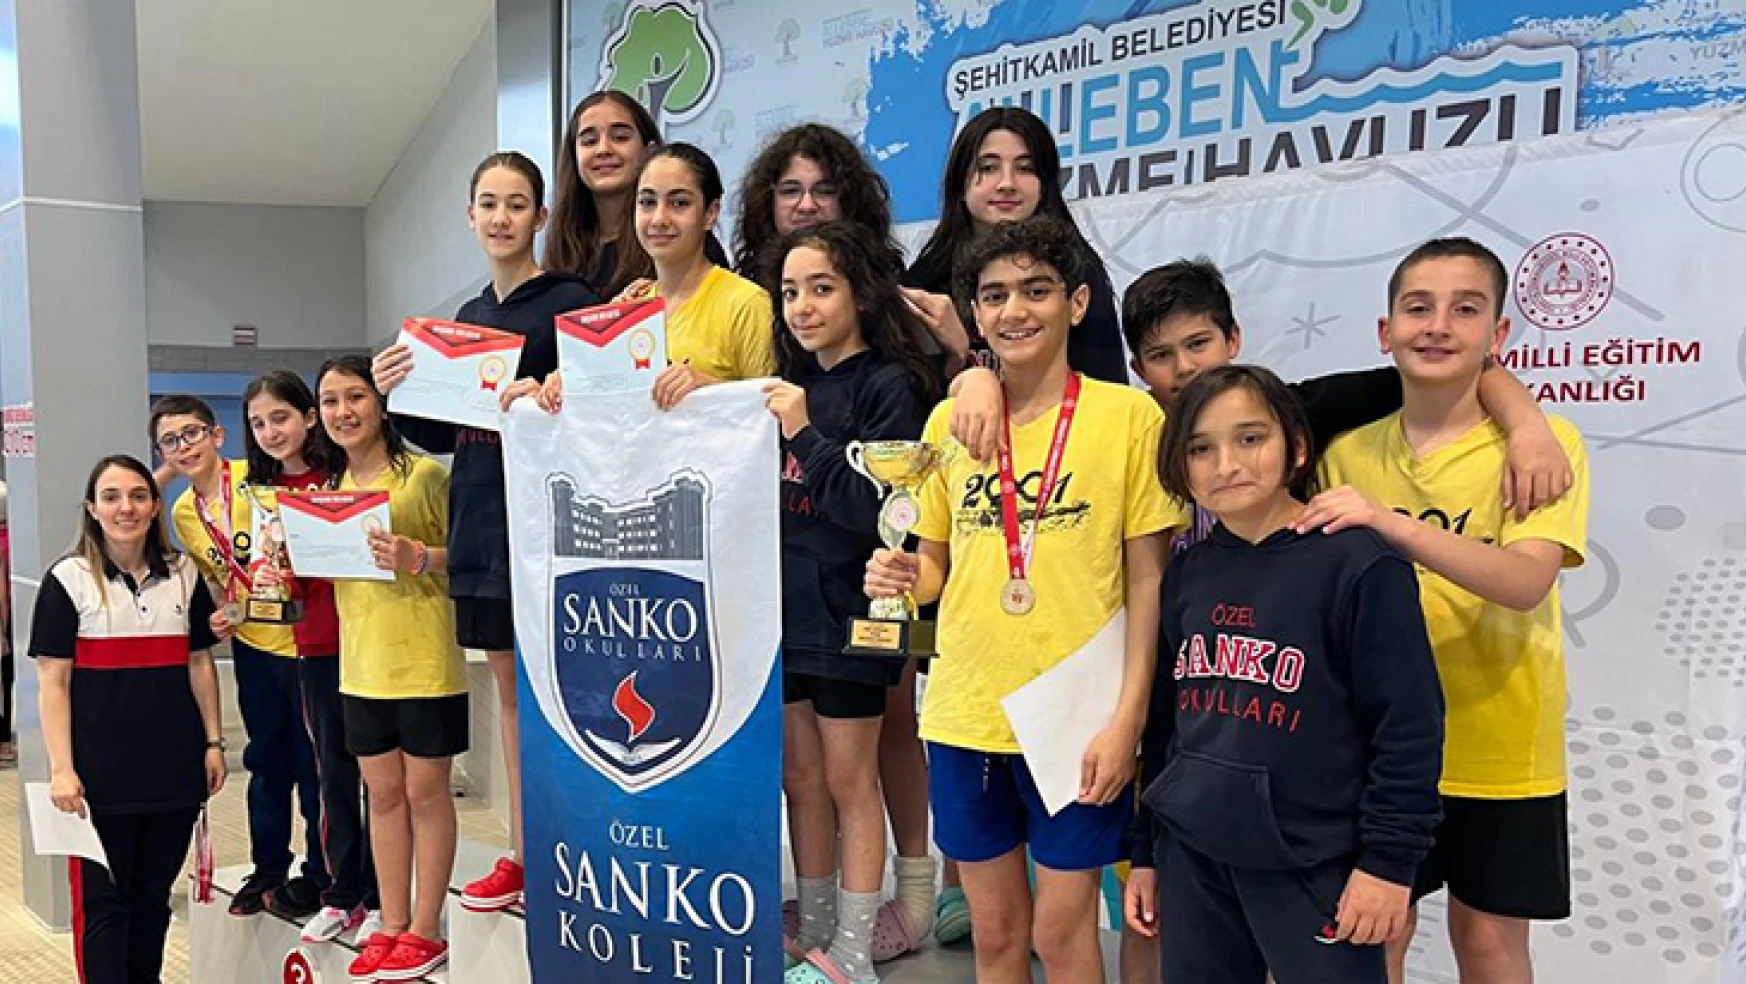 SANKO Okulları yüzmede 5 altın madalya kazandı